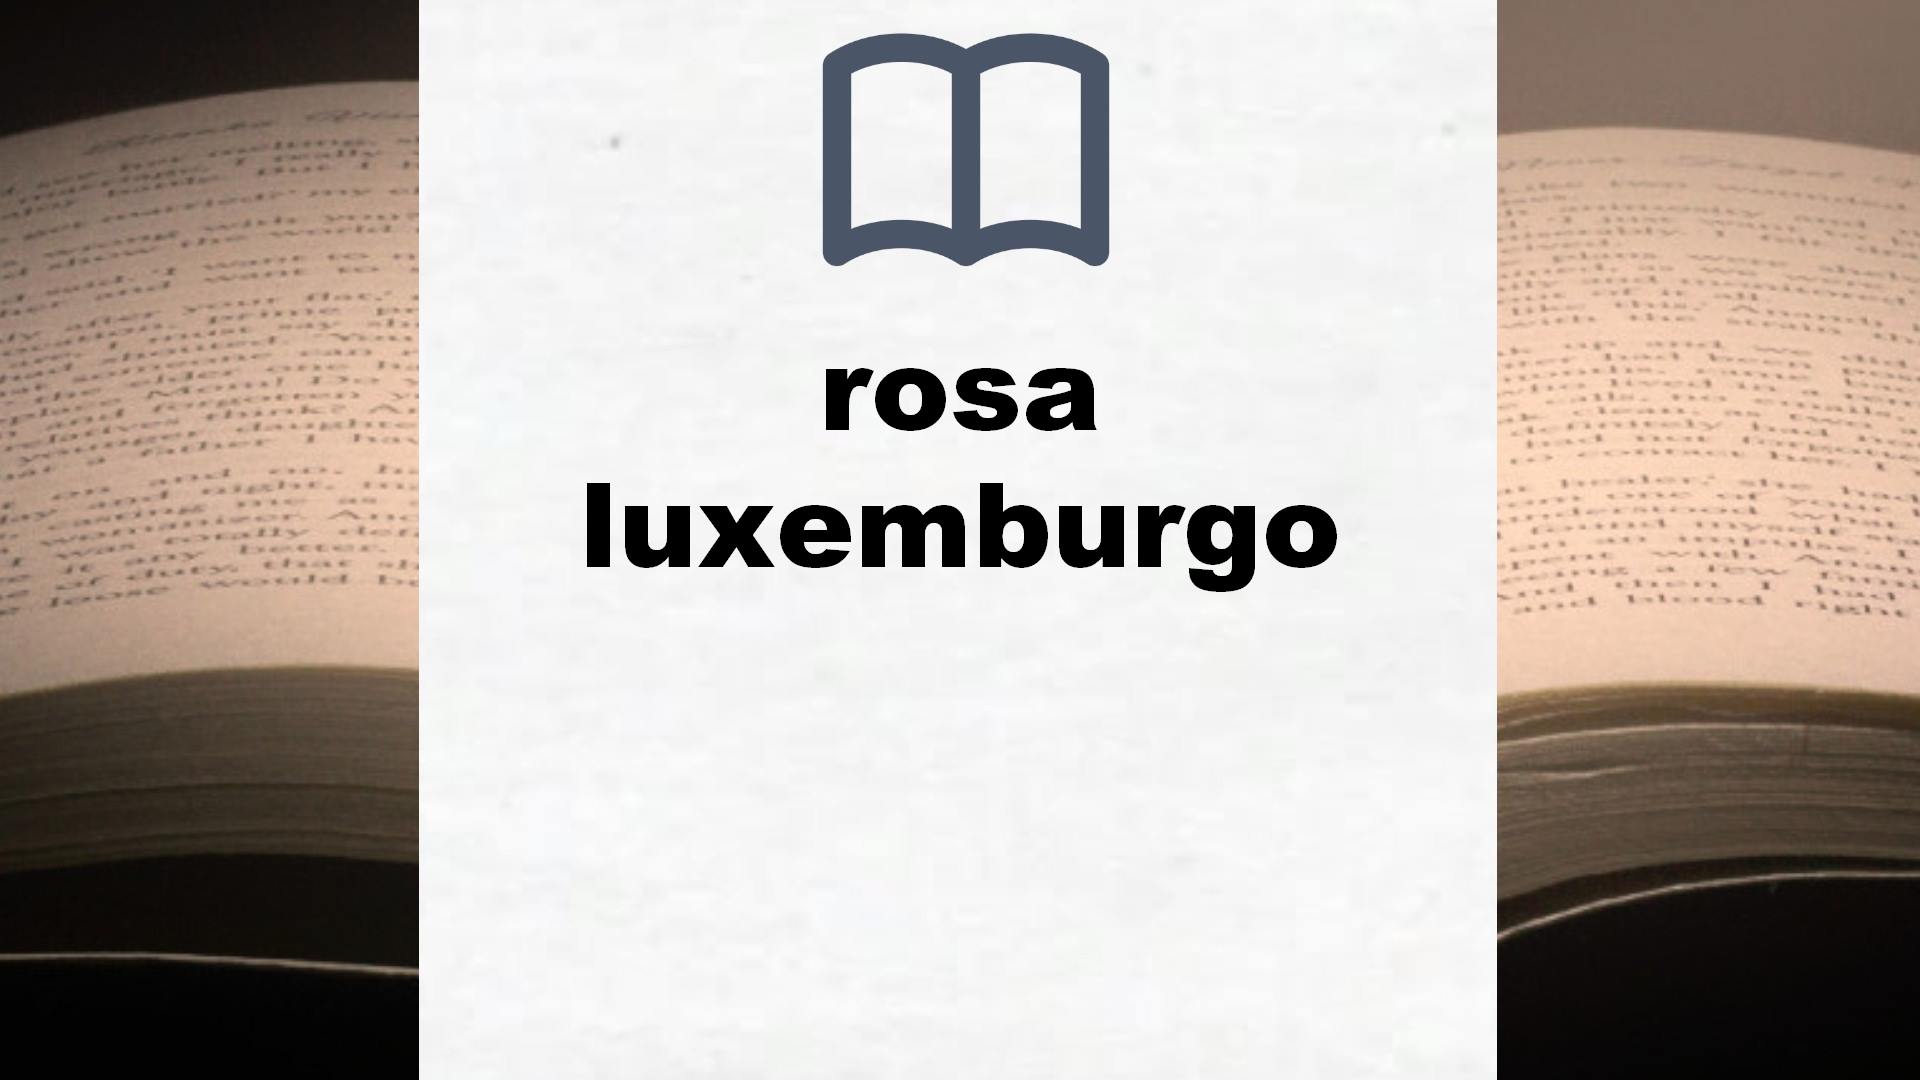 Libros sobre rosa luxemburgo